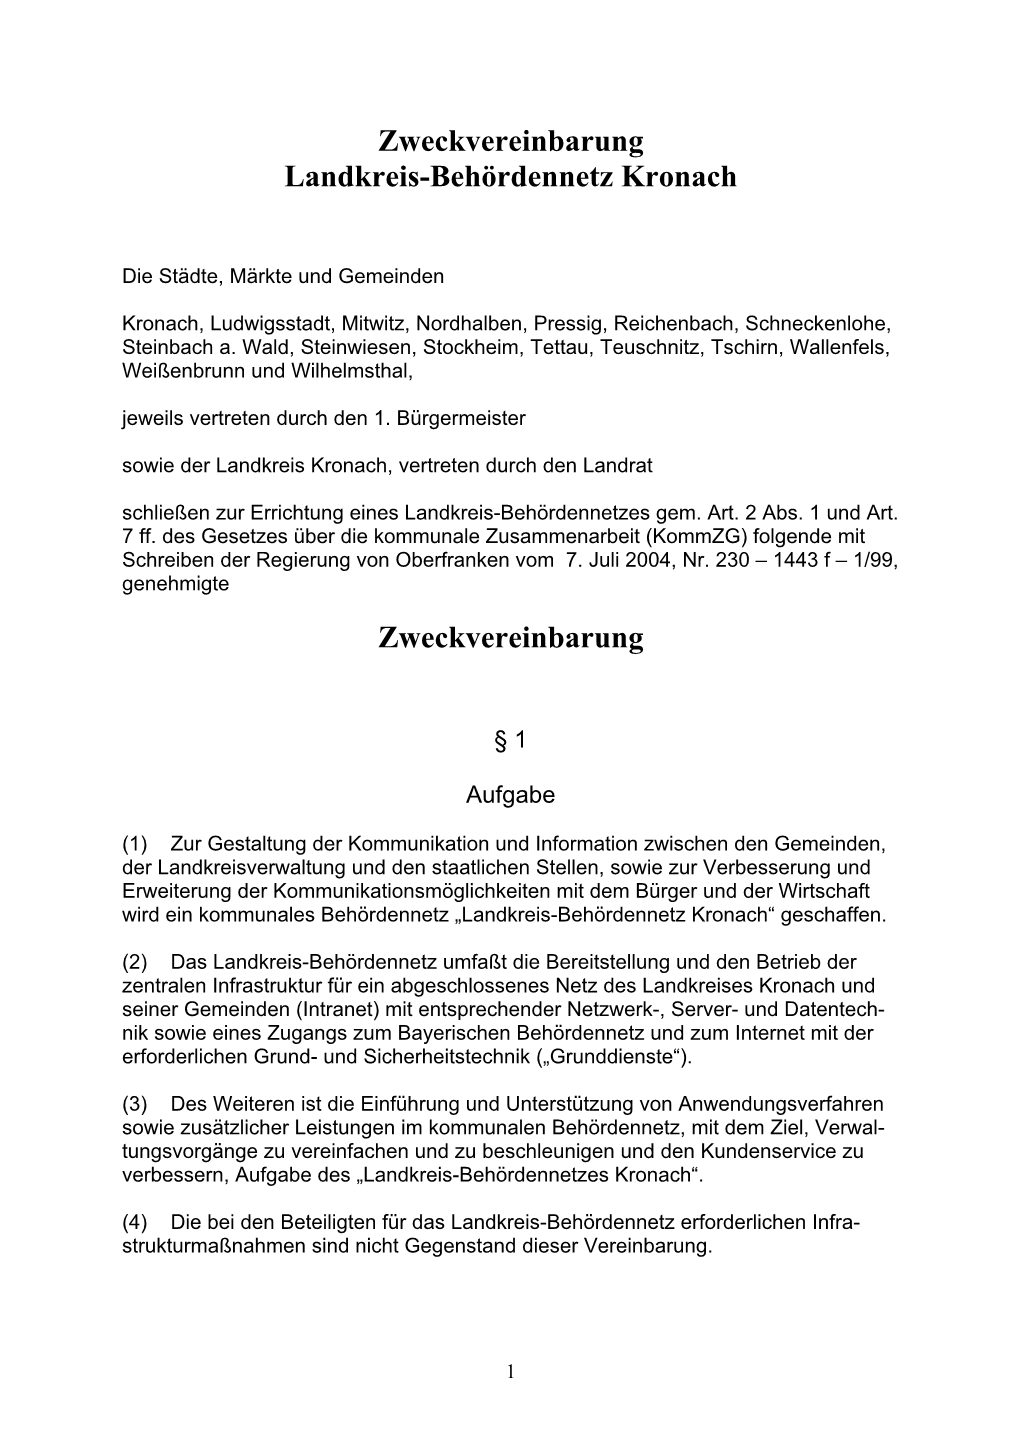 Zweckvereinbarung Landkreis-Behördennetz Kronach